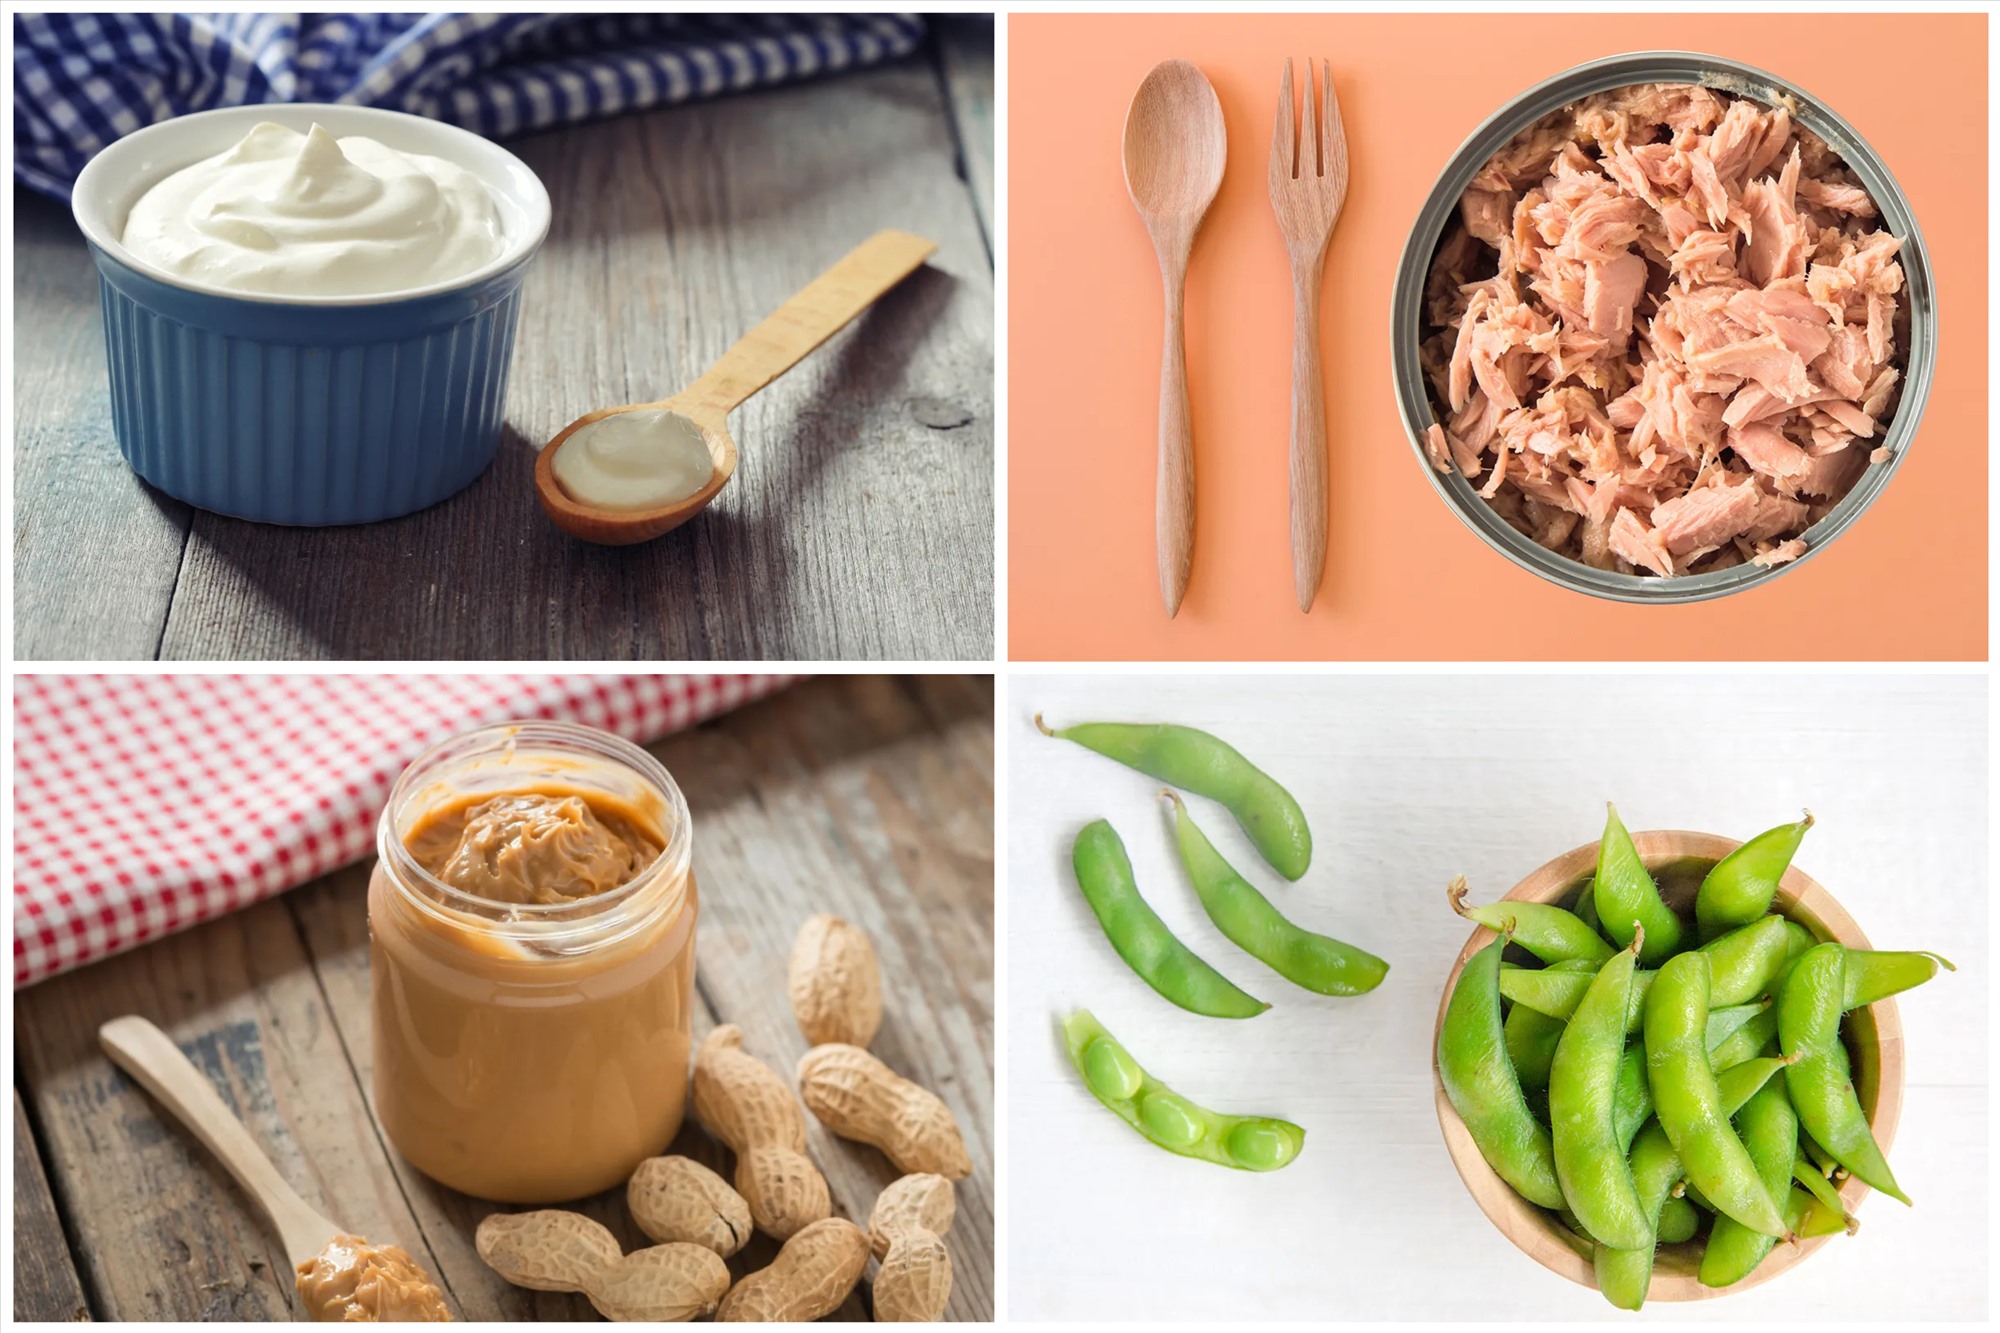 Nếu bạn đang trong chế độ ăn kiêng thì đây là những món ăn chứa ít calo, giàu protein, có thể giúp bạn giảm cân nhanh chóng. Đồ họa: Bảo Thoa.